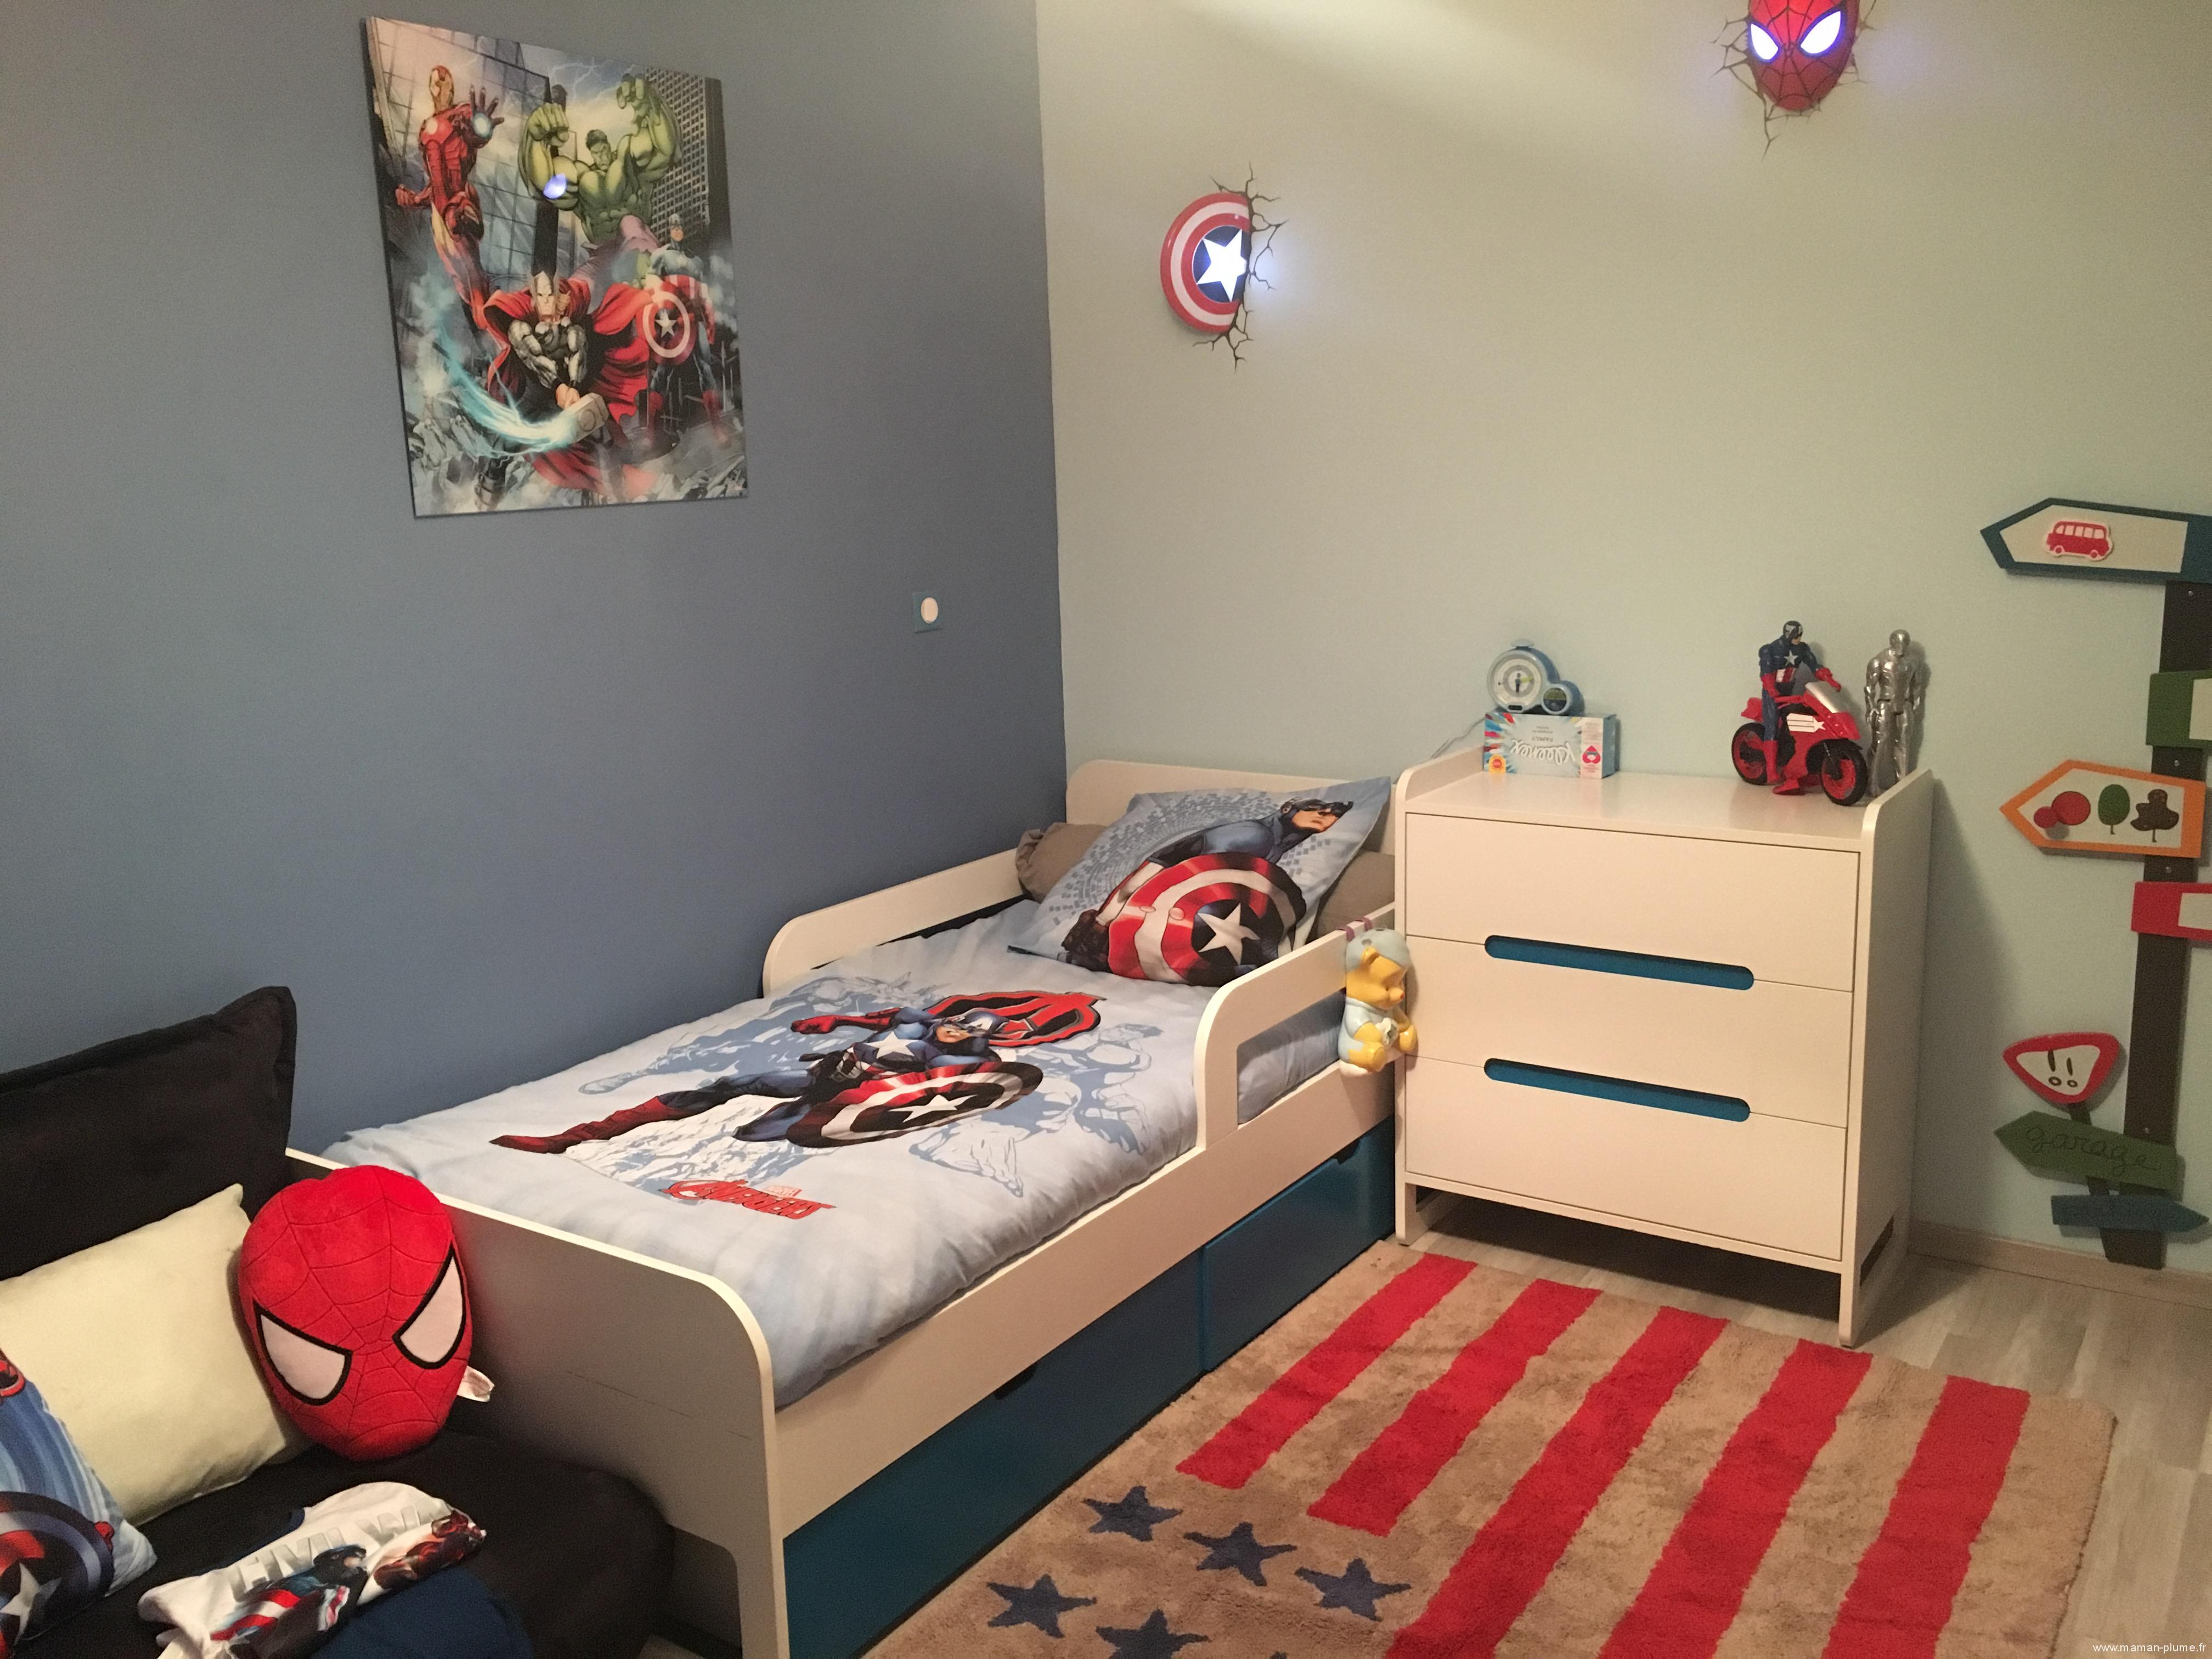 Décoration Comics Marvel pour une chambre d'enfant